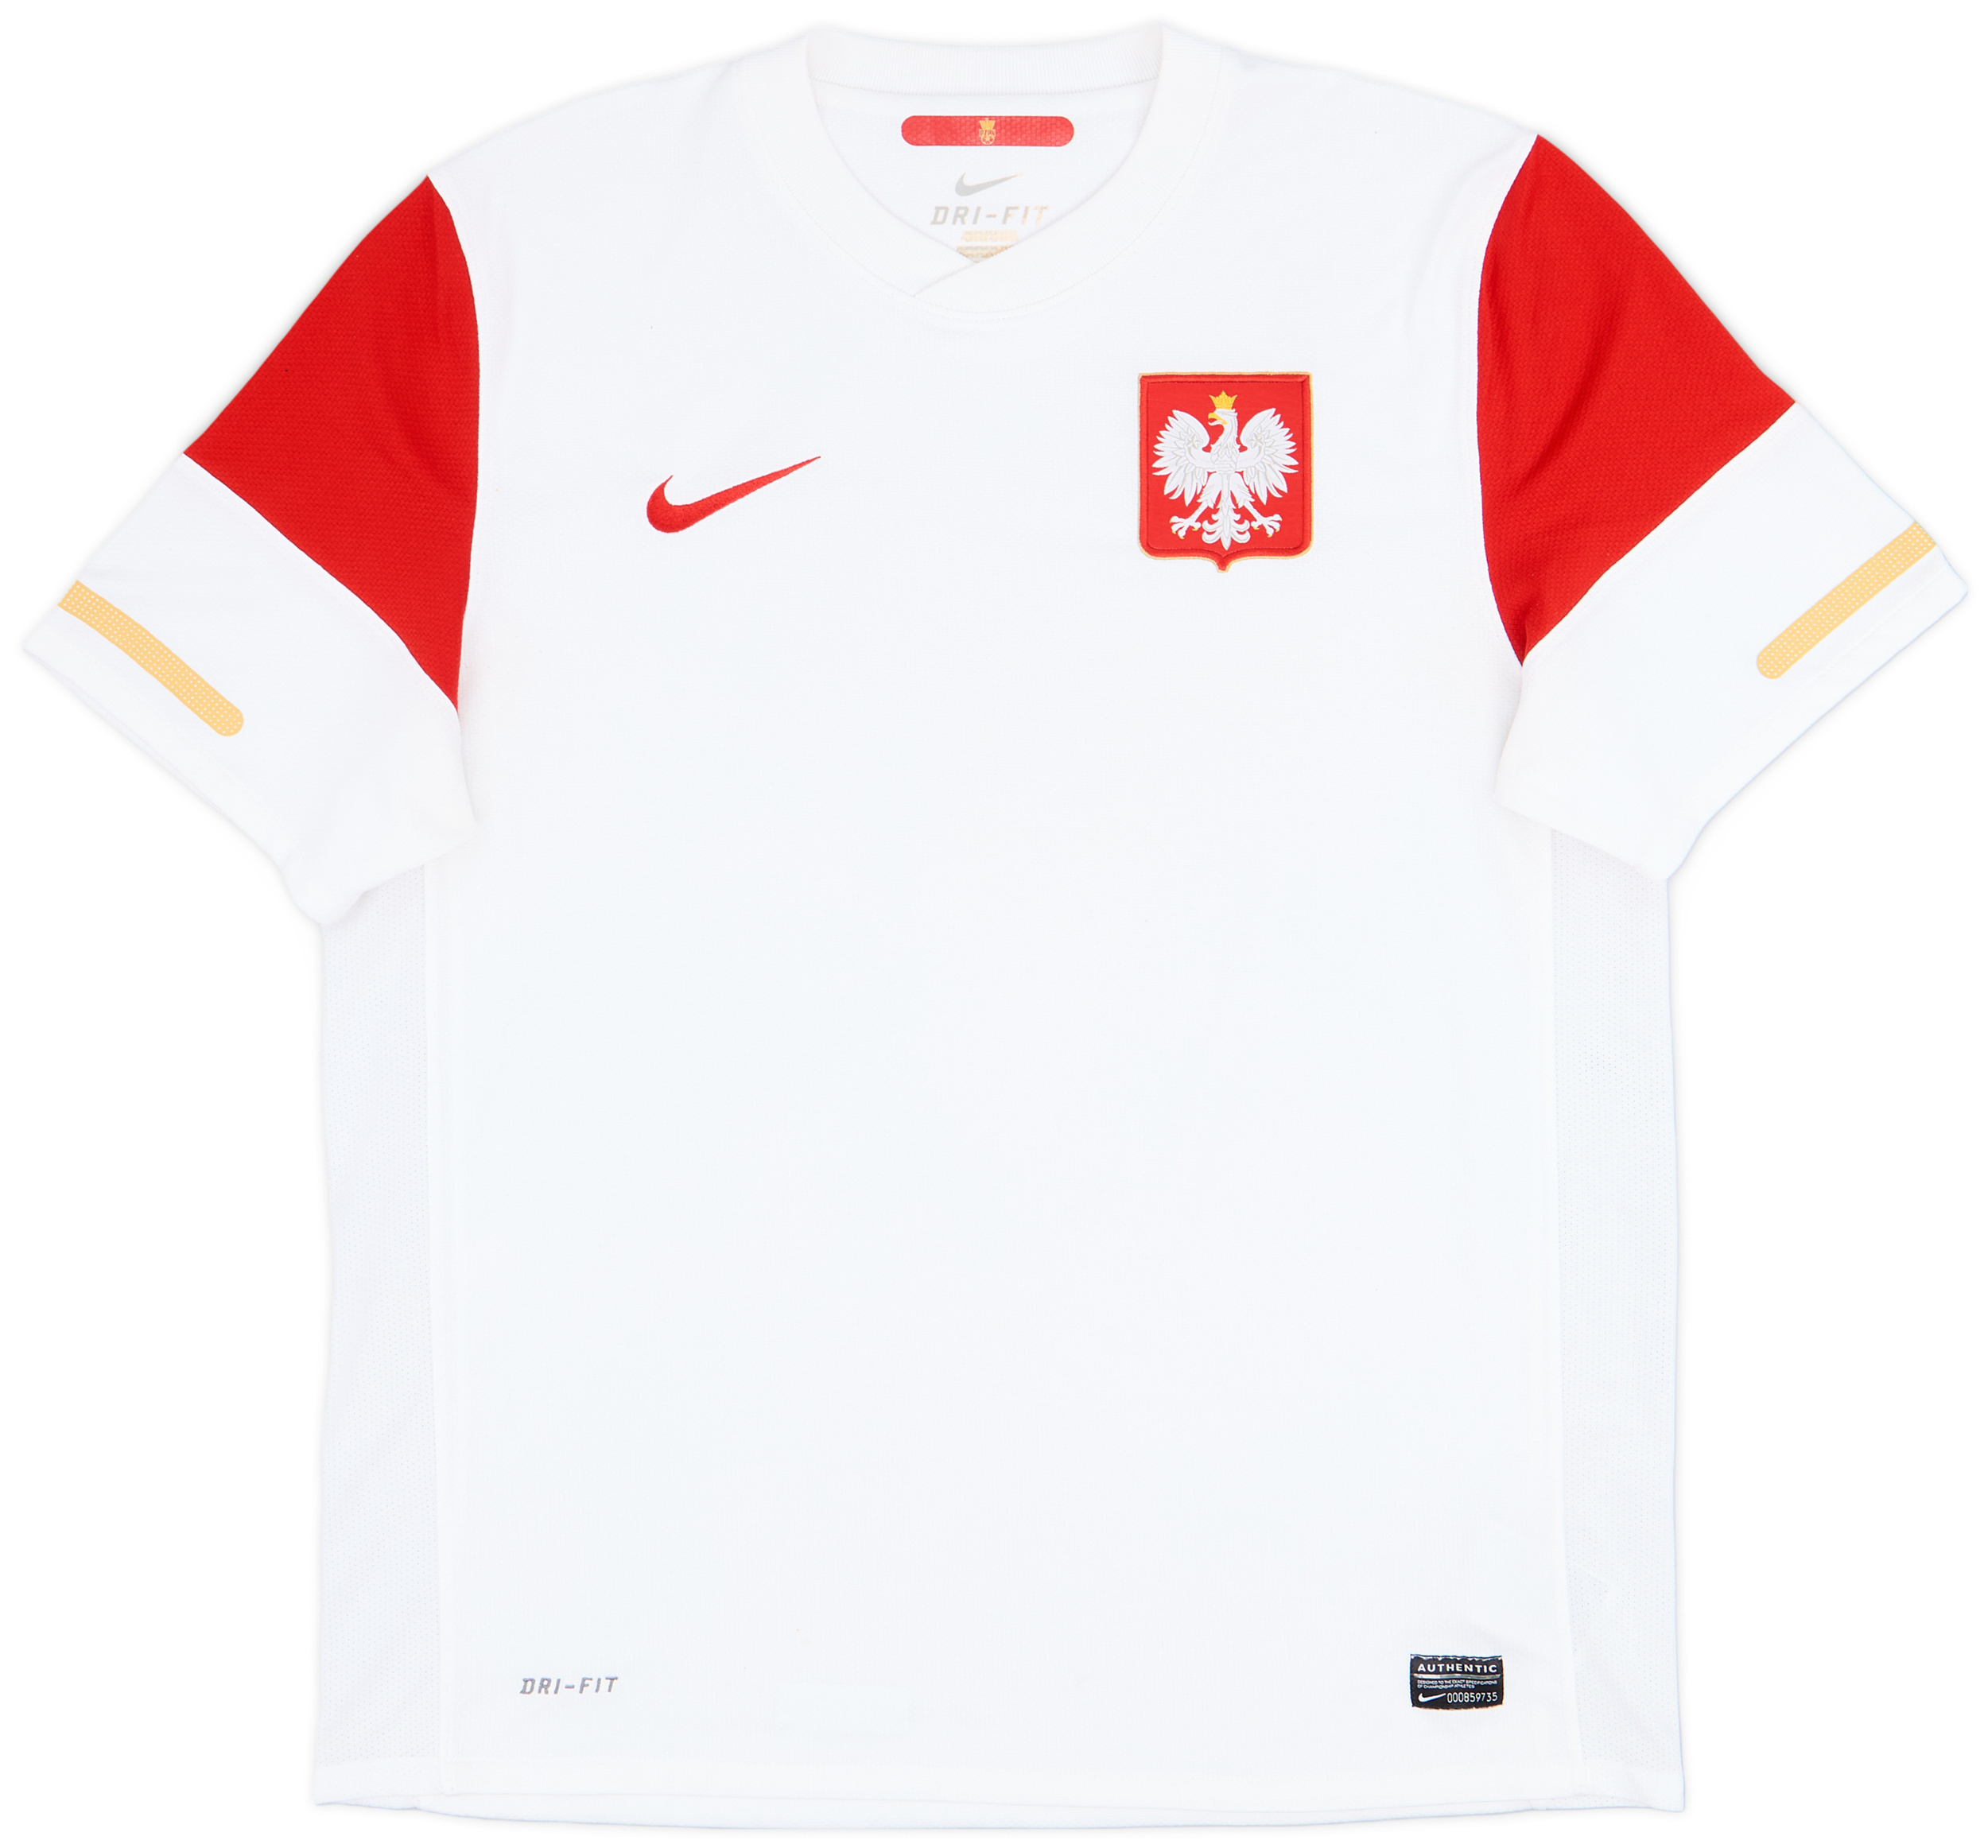 2010-12 Poland Home Shirt - 9/10 - ()